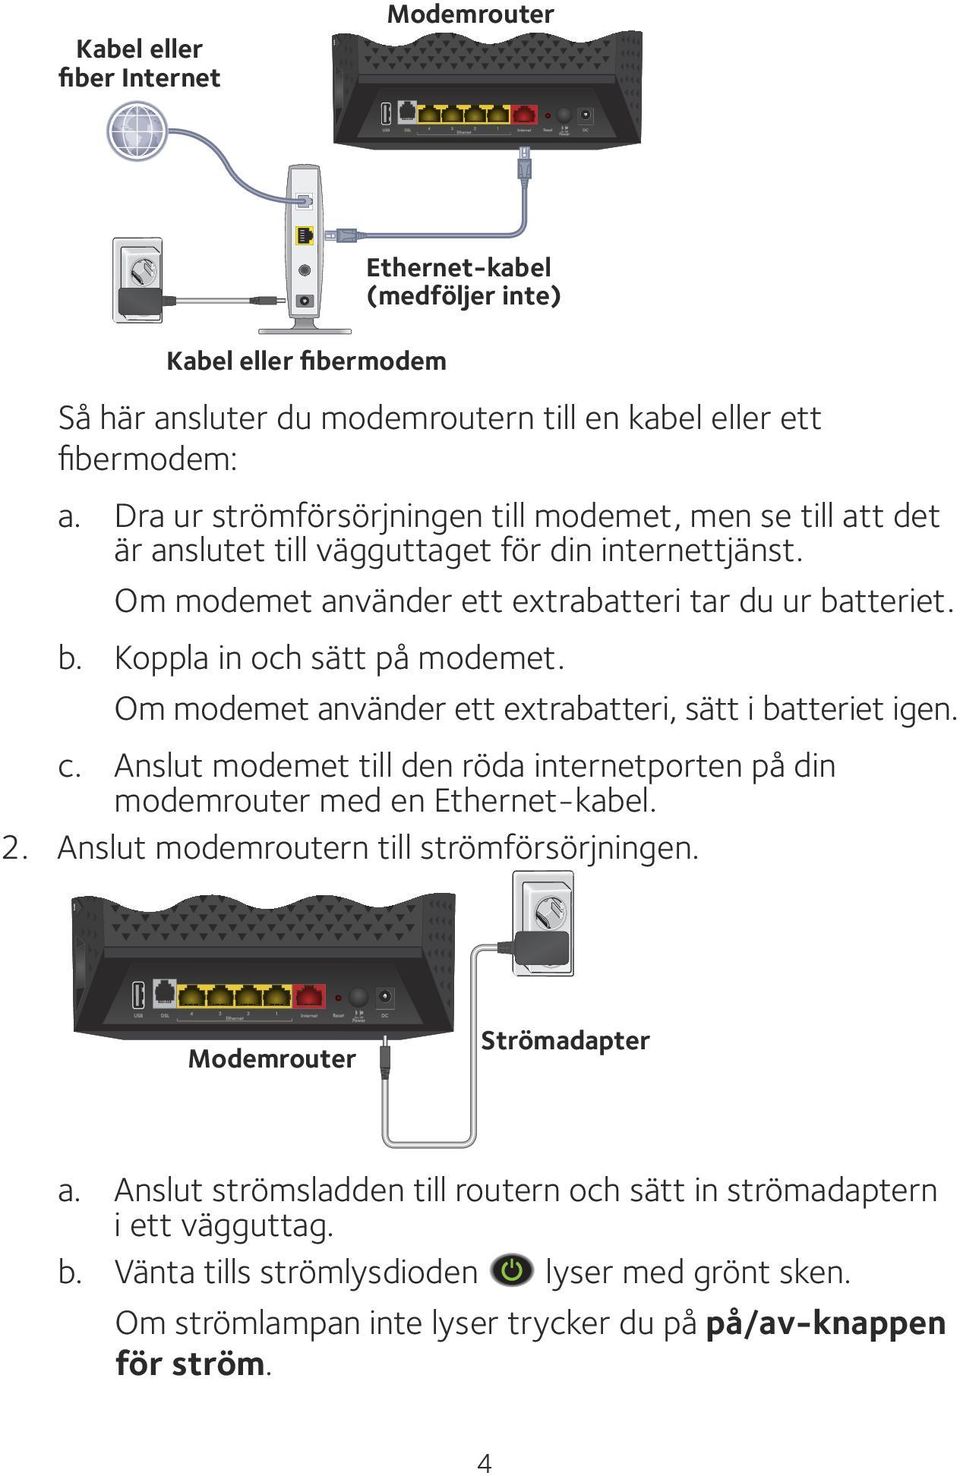 Om modemet använder ett extrabatteri, sätt i batteriet igen. c. Anslut modemet till den röda internetporten på din modemrouter med en Ethernet-kabel. 2. Anslut modemroutern till strömförsörjningen.